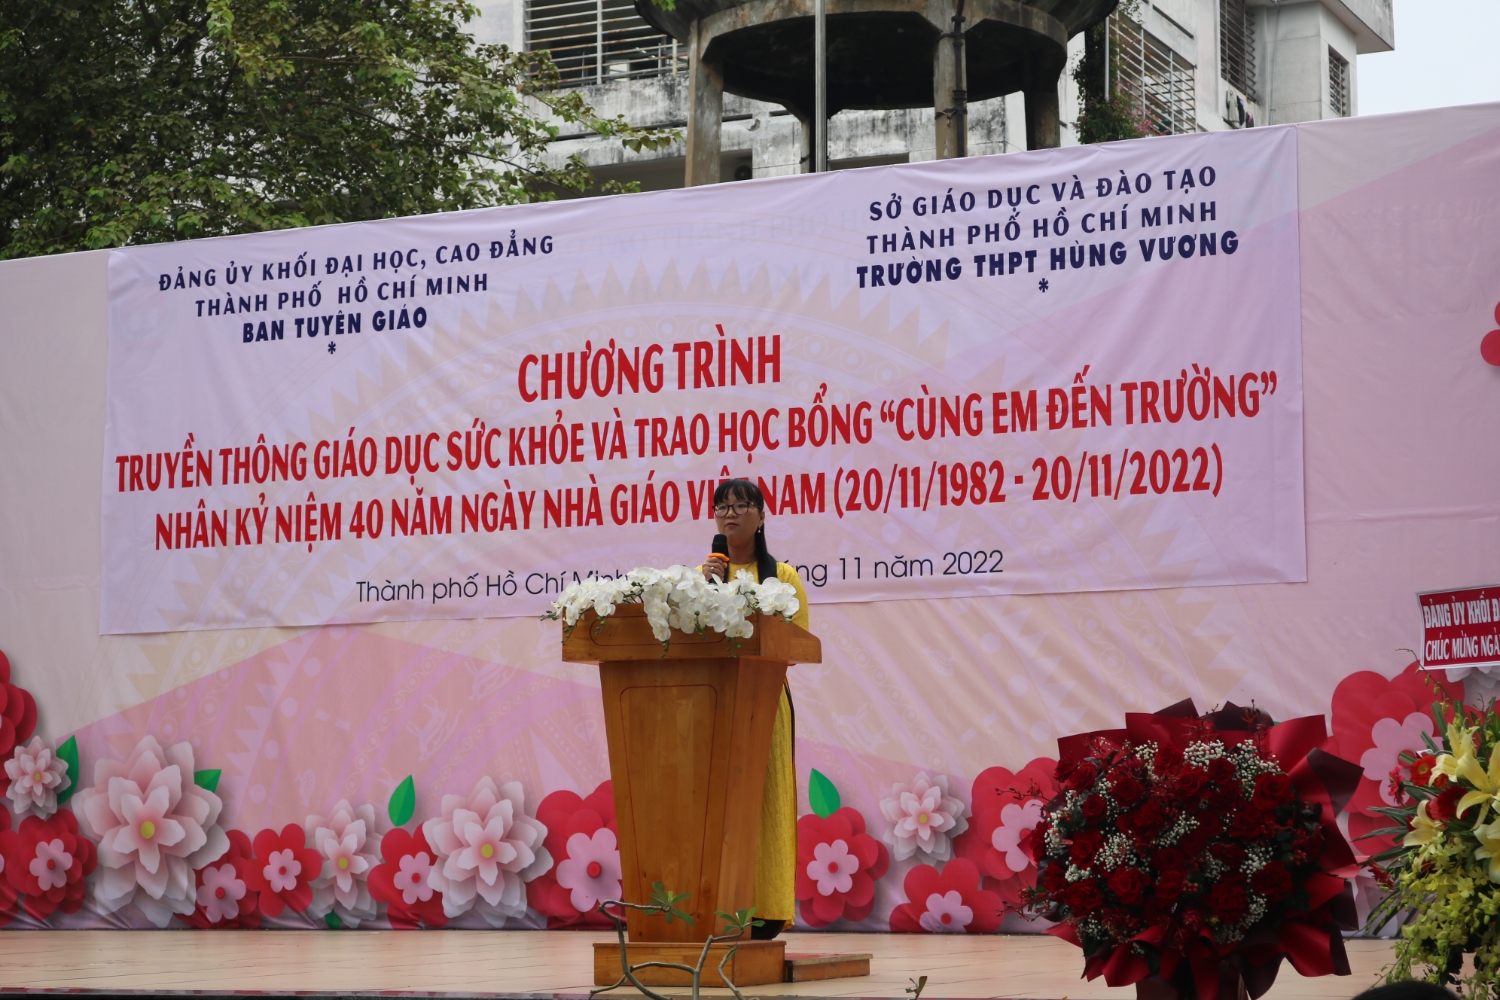 Đồng chí Đặng Thuỳ Khánh Vân, Trưởng Ban Tuyên giáo Đảng uỷ Khối Đại học, Cao đẳng TPHCM phát biểu tại buổi truyền thông.